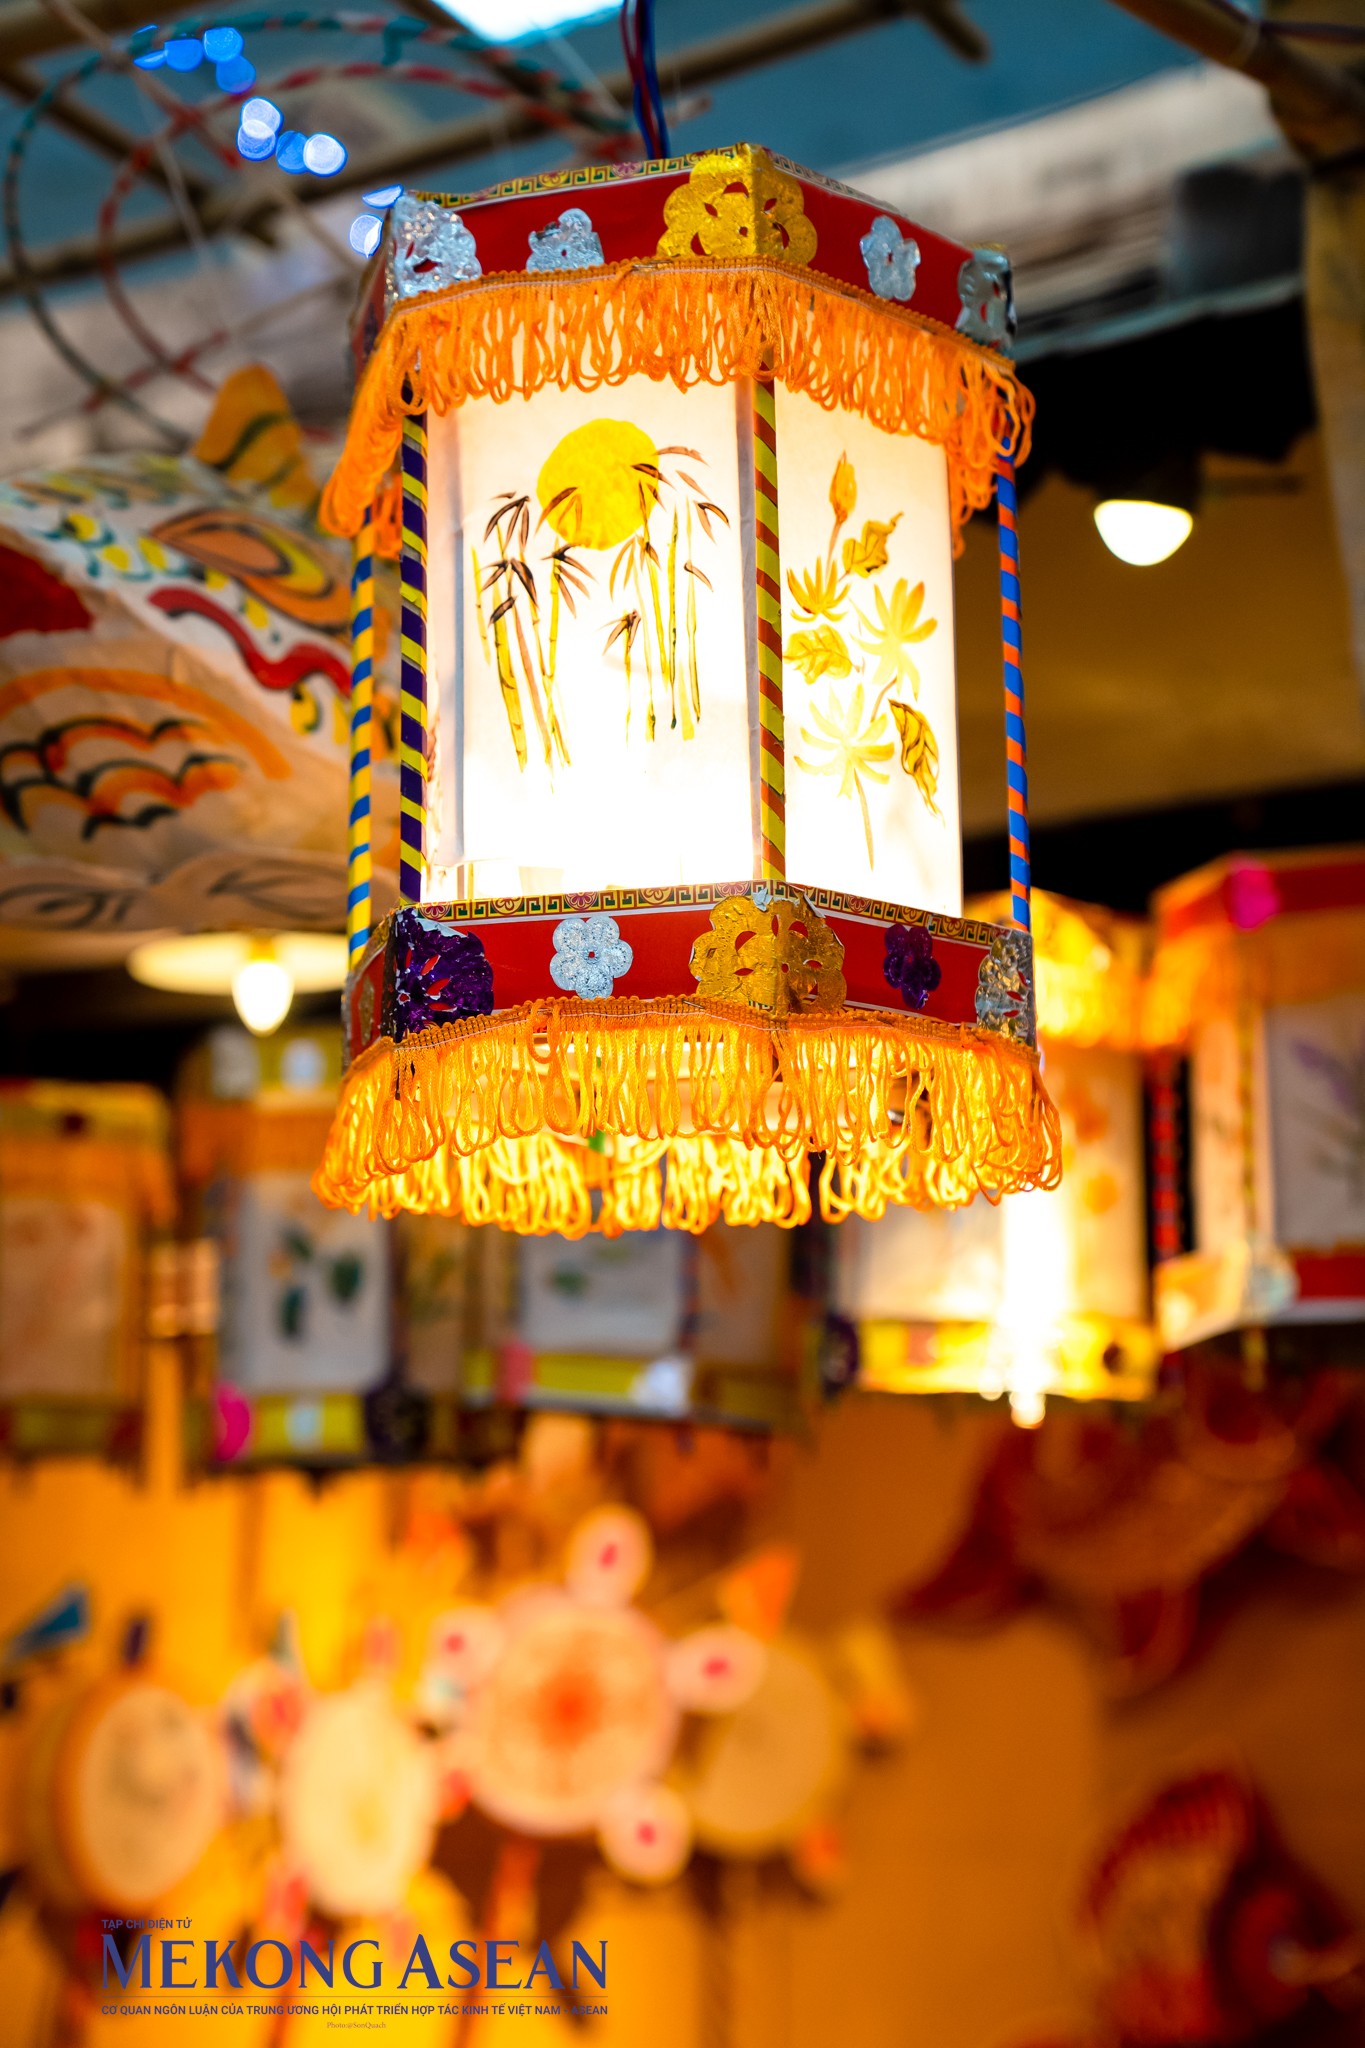 Đèn kéo quân lung linh rực rỡ với thiết kế được làm từ giấy, khung trúc và gỗ vốn thường xuất hiện trong các phim truyền hình cổ trang. Đây là một trong những loại đèn phổ biến nhất trong lễ Trung thu ngày đó.